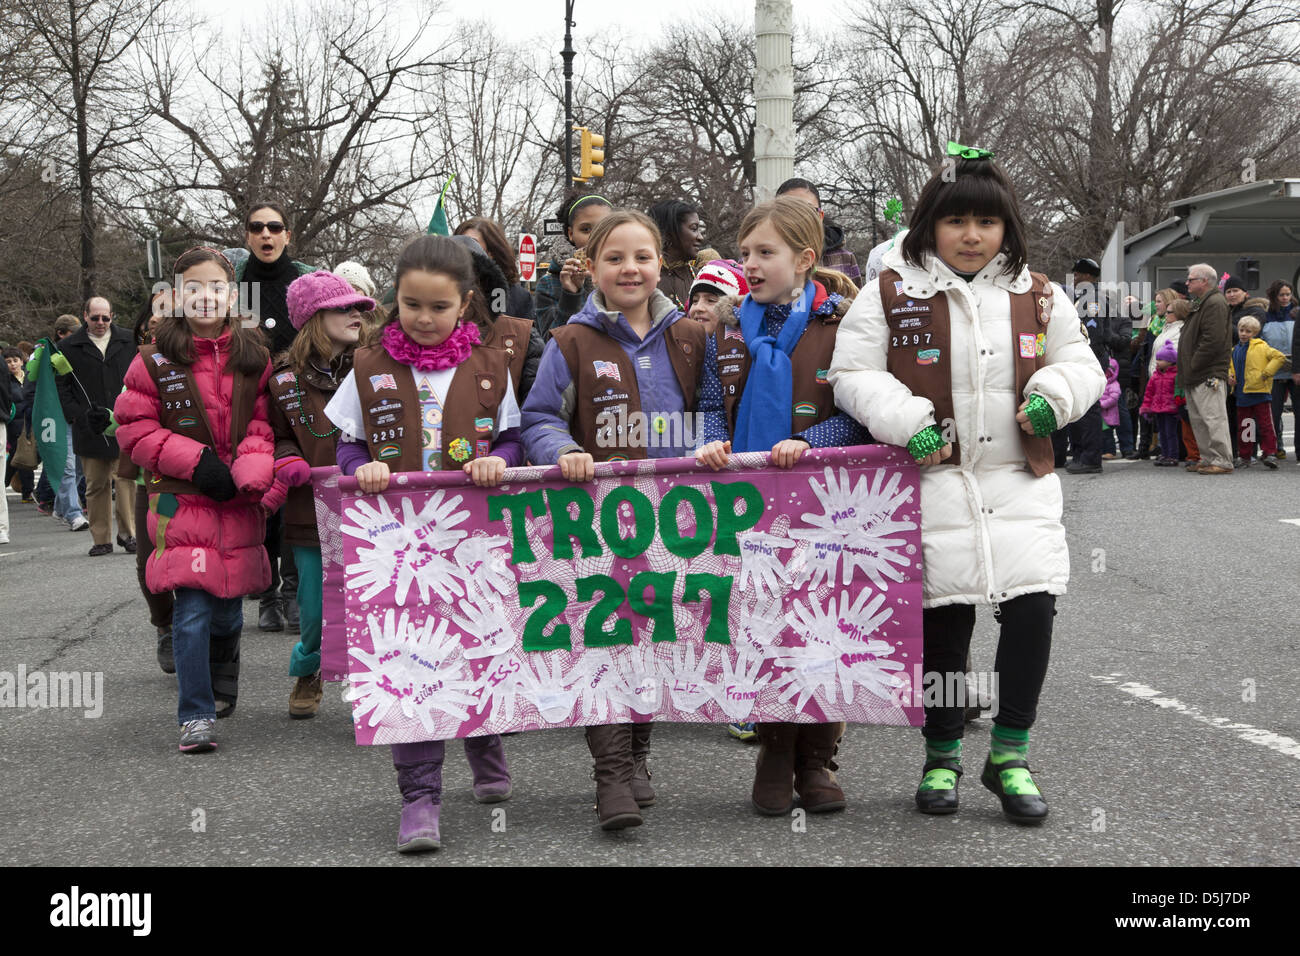 Die jährliche irische Parade in Park Slope, Brooklyn, NY in diesem Jahr wurde am St. Patricks Day, 17. März gefeiert. Stockfoto